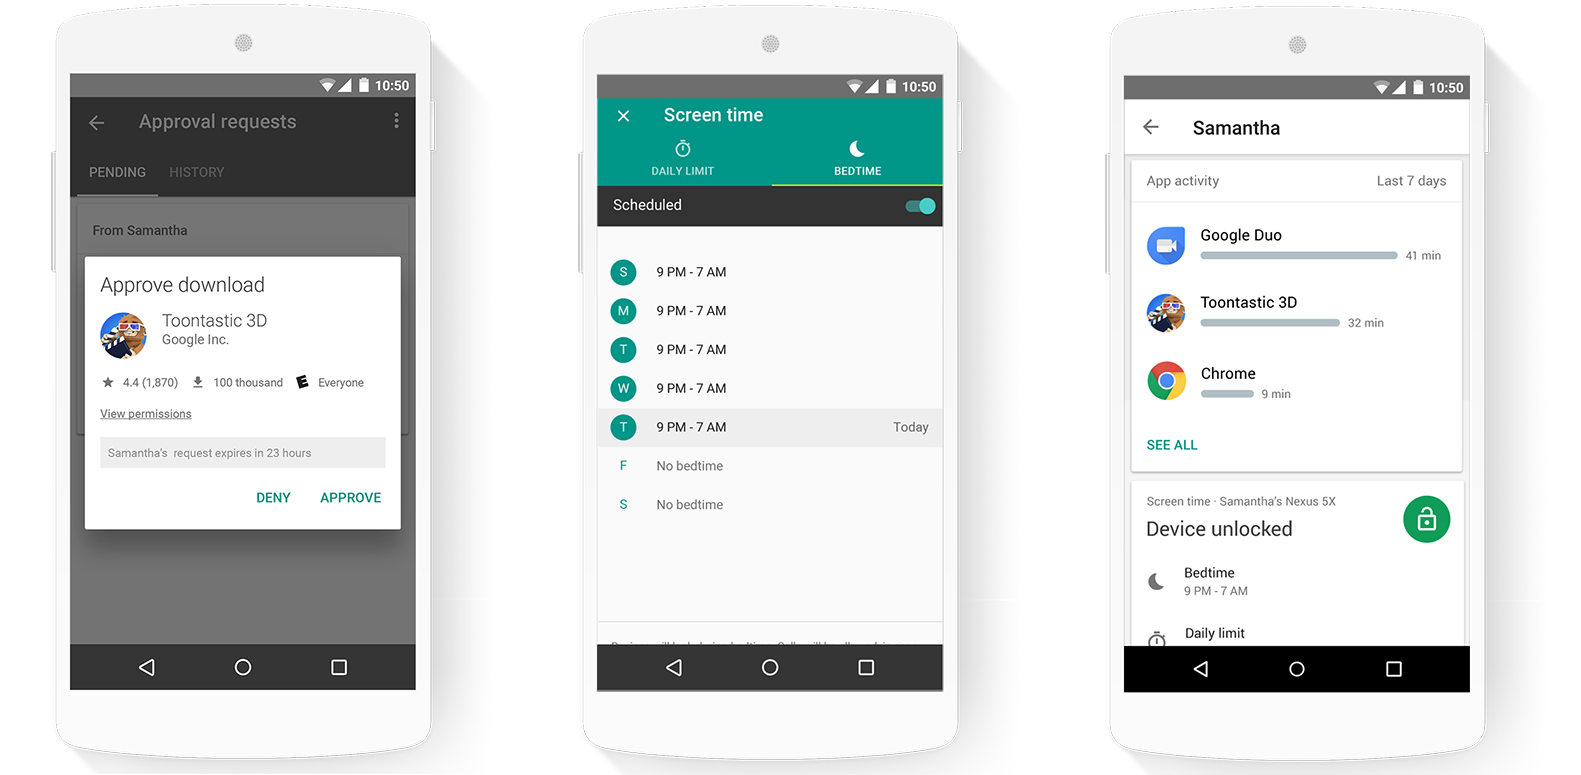 Android introduce una app para controlar la actividad de tus hijos en el smartphone